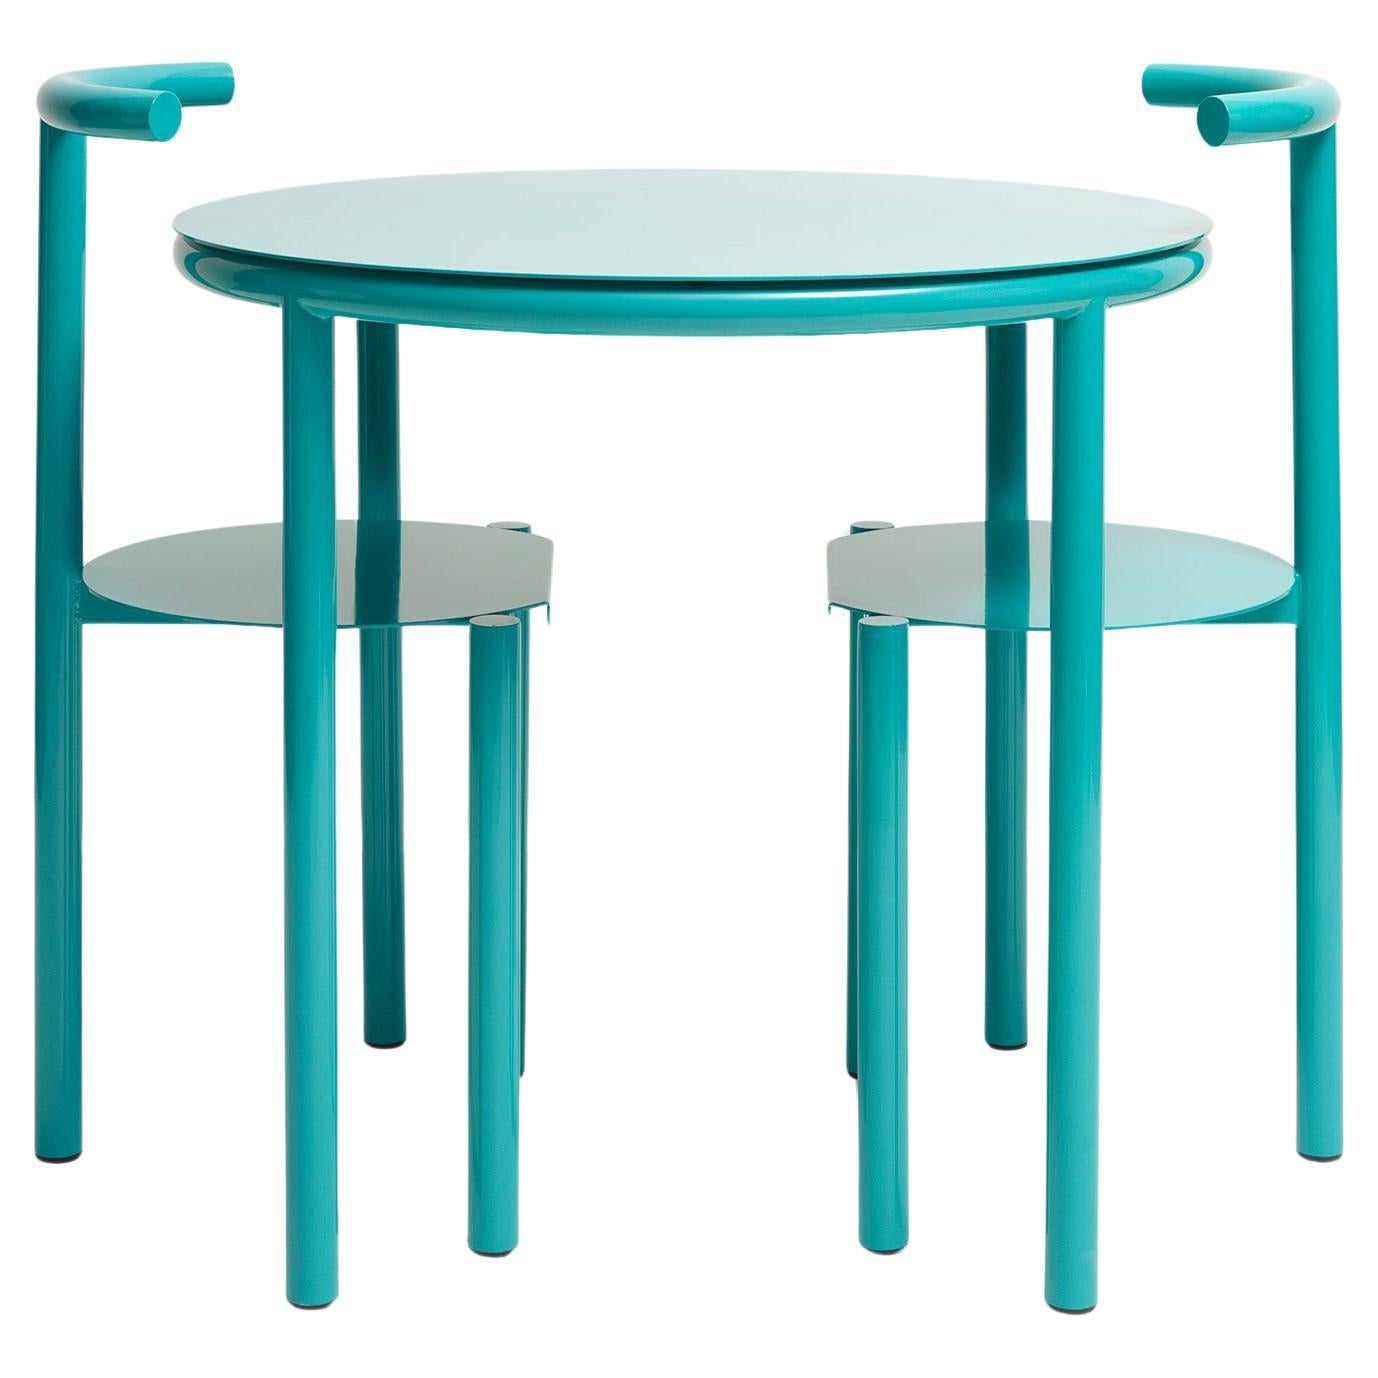 Ringtisch mit 2 Stühlen- Minimalistischer farbiger Metallrohr-Ess-/Kaffeetisch